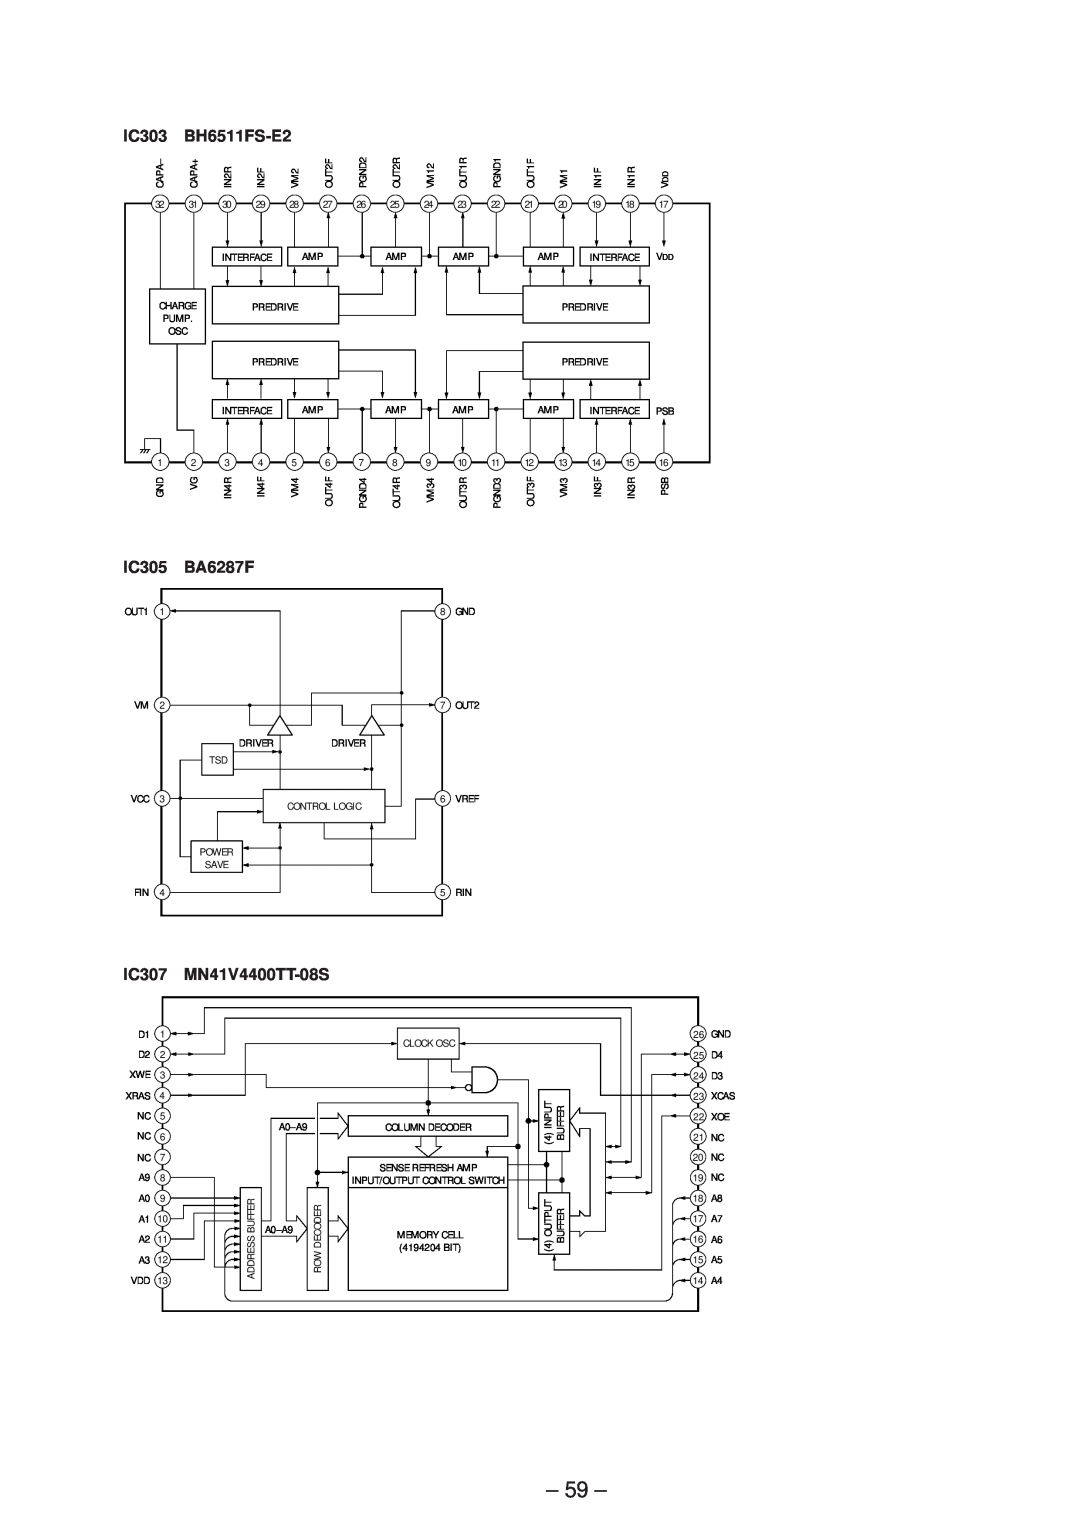 Sony MDX-C5970R service manual IC303, BH6511FS-E2, IC305, BA6287F, IC307, MN41V4400TT-08S 